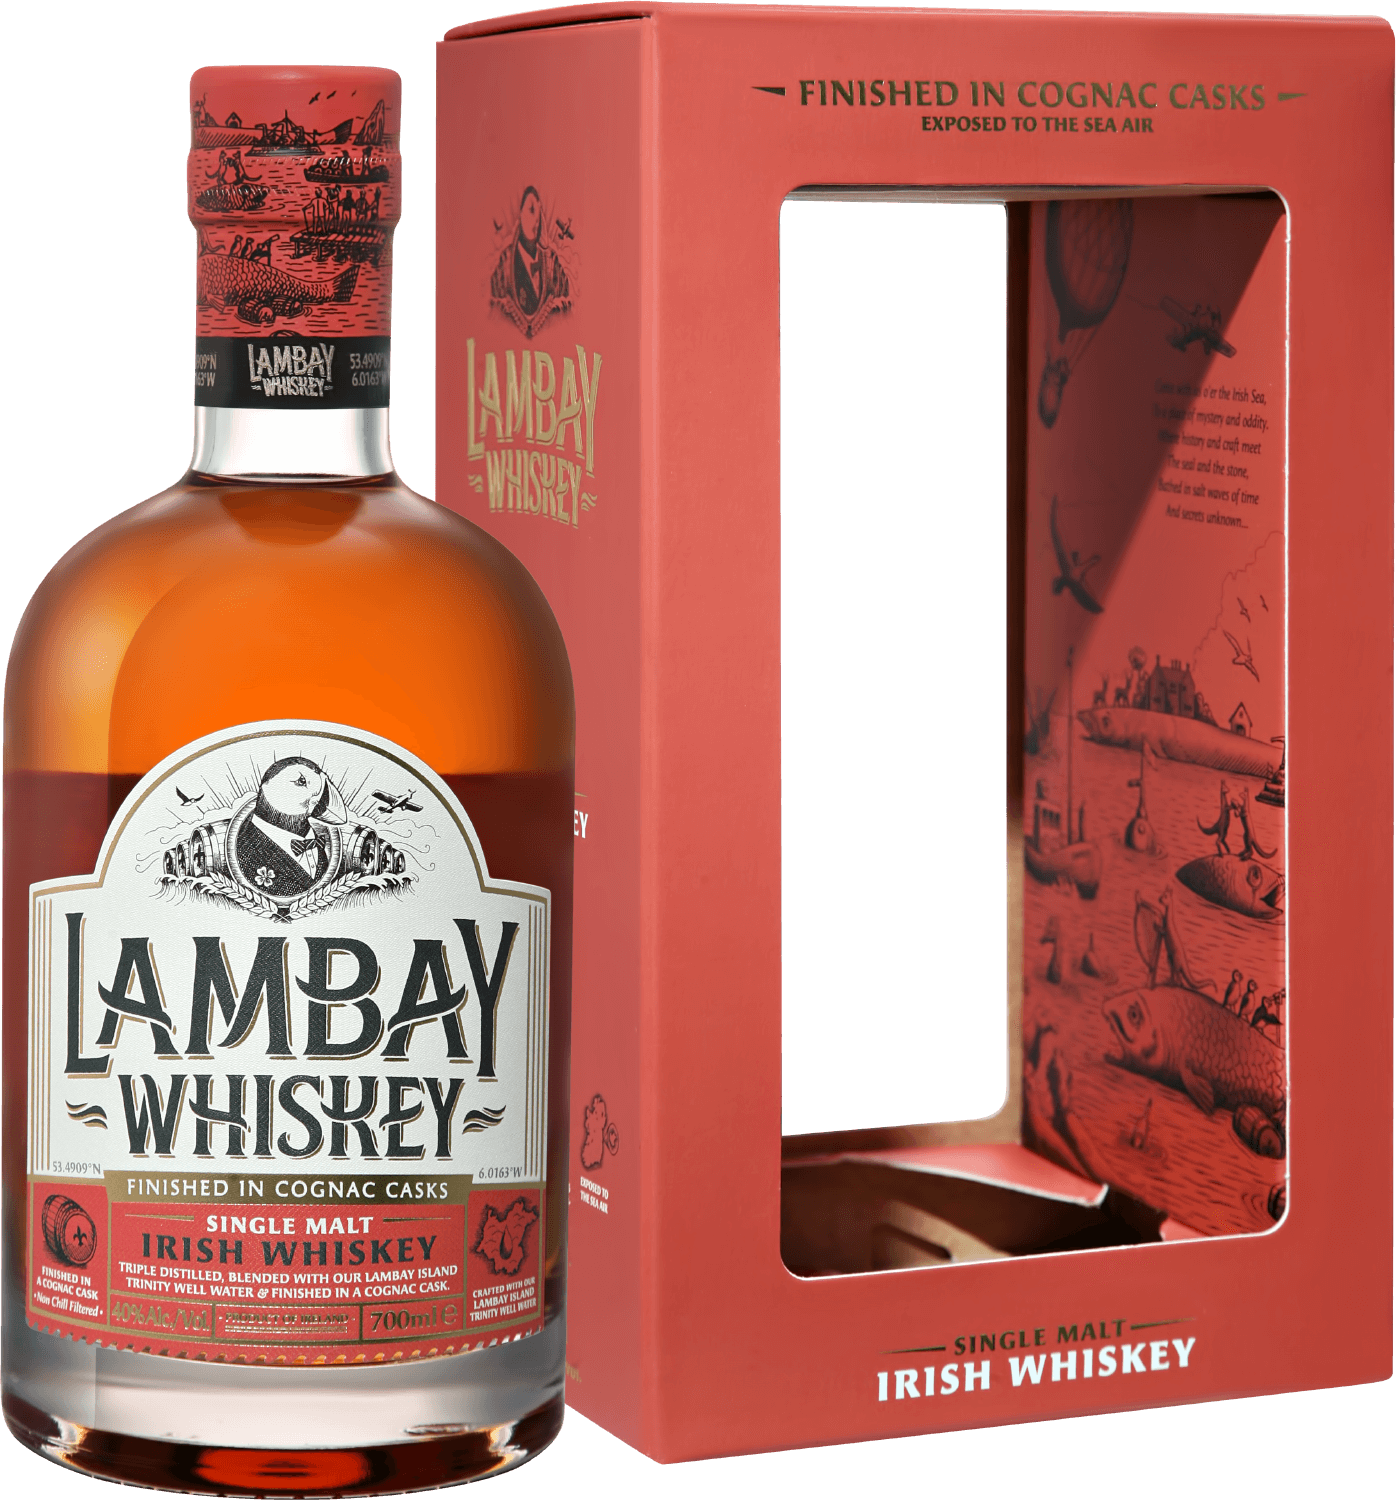 Lambay Single Malt Irish Whiskey 5 y.o. (gift box) goalong single malt whiskey small batch gift box